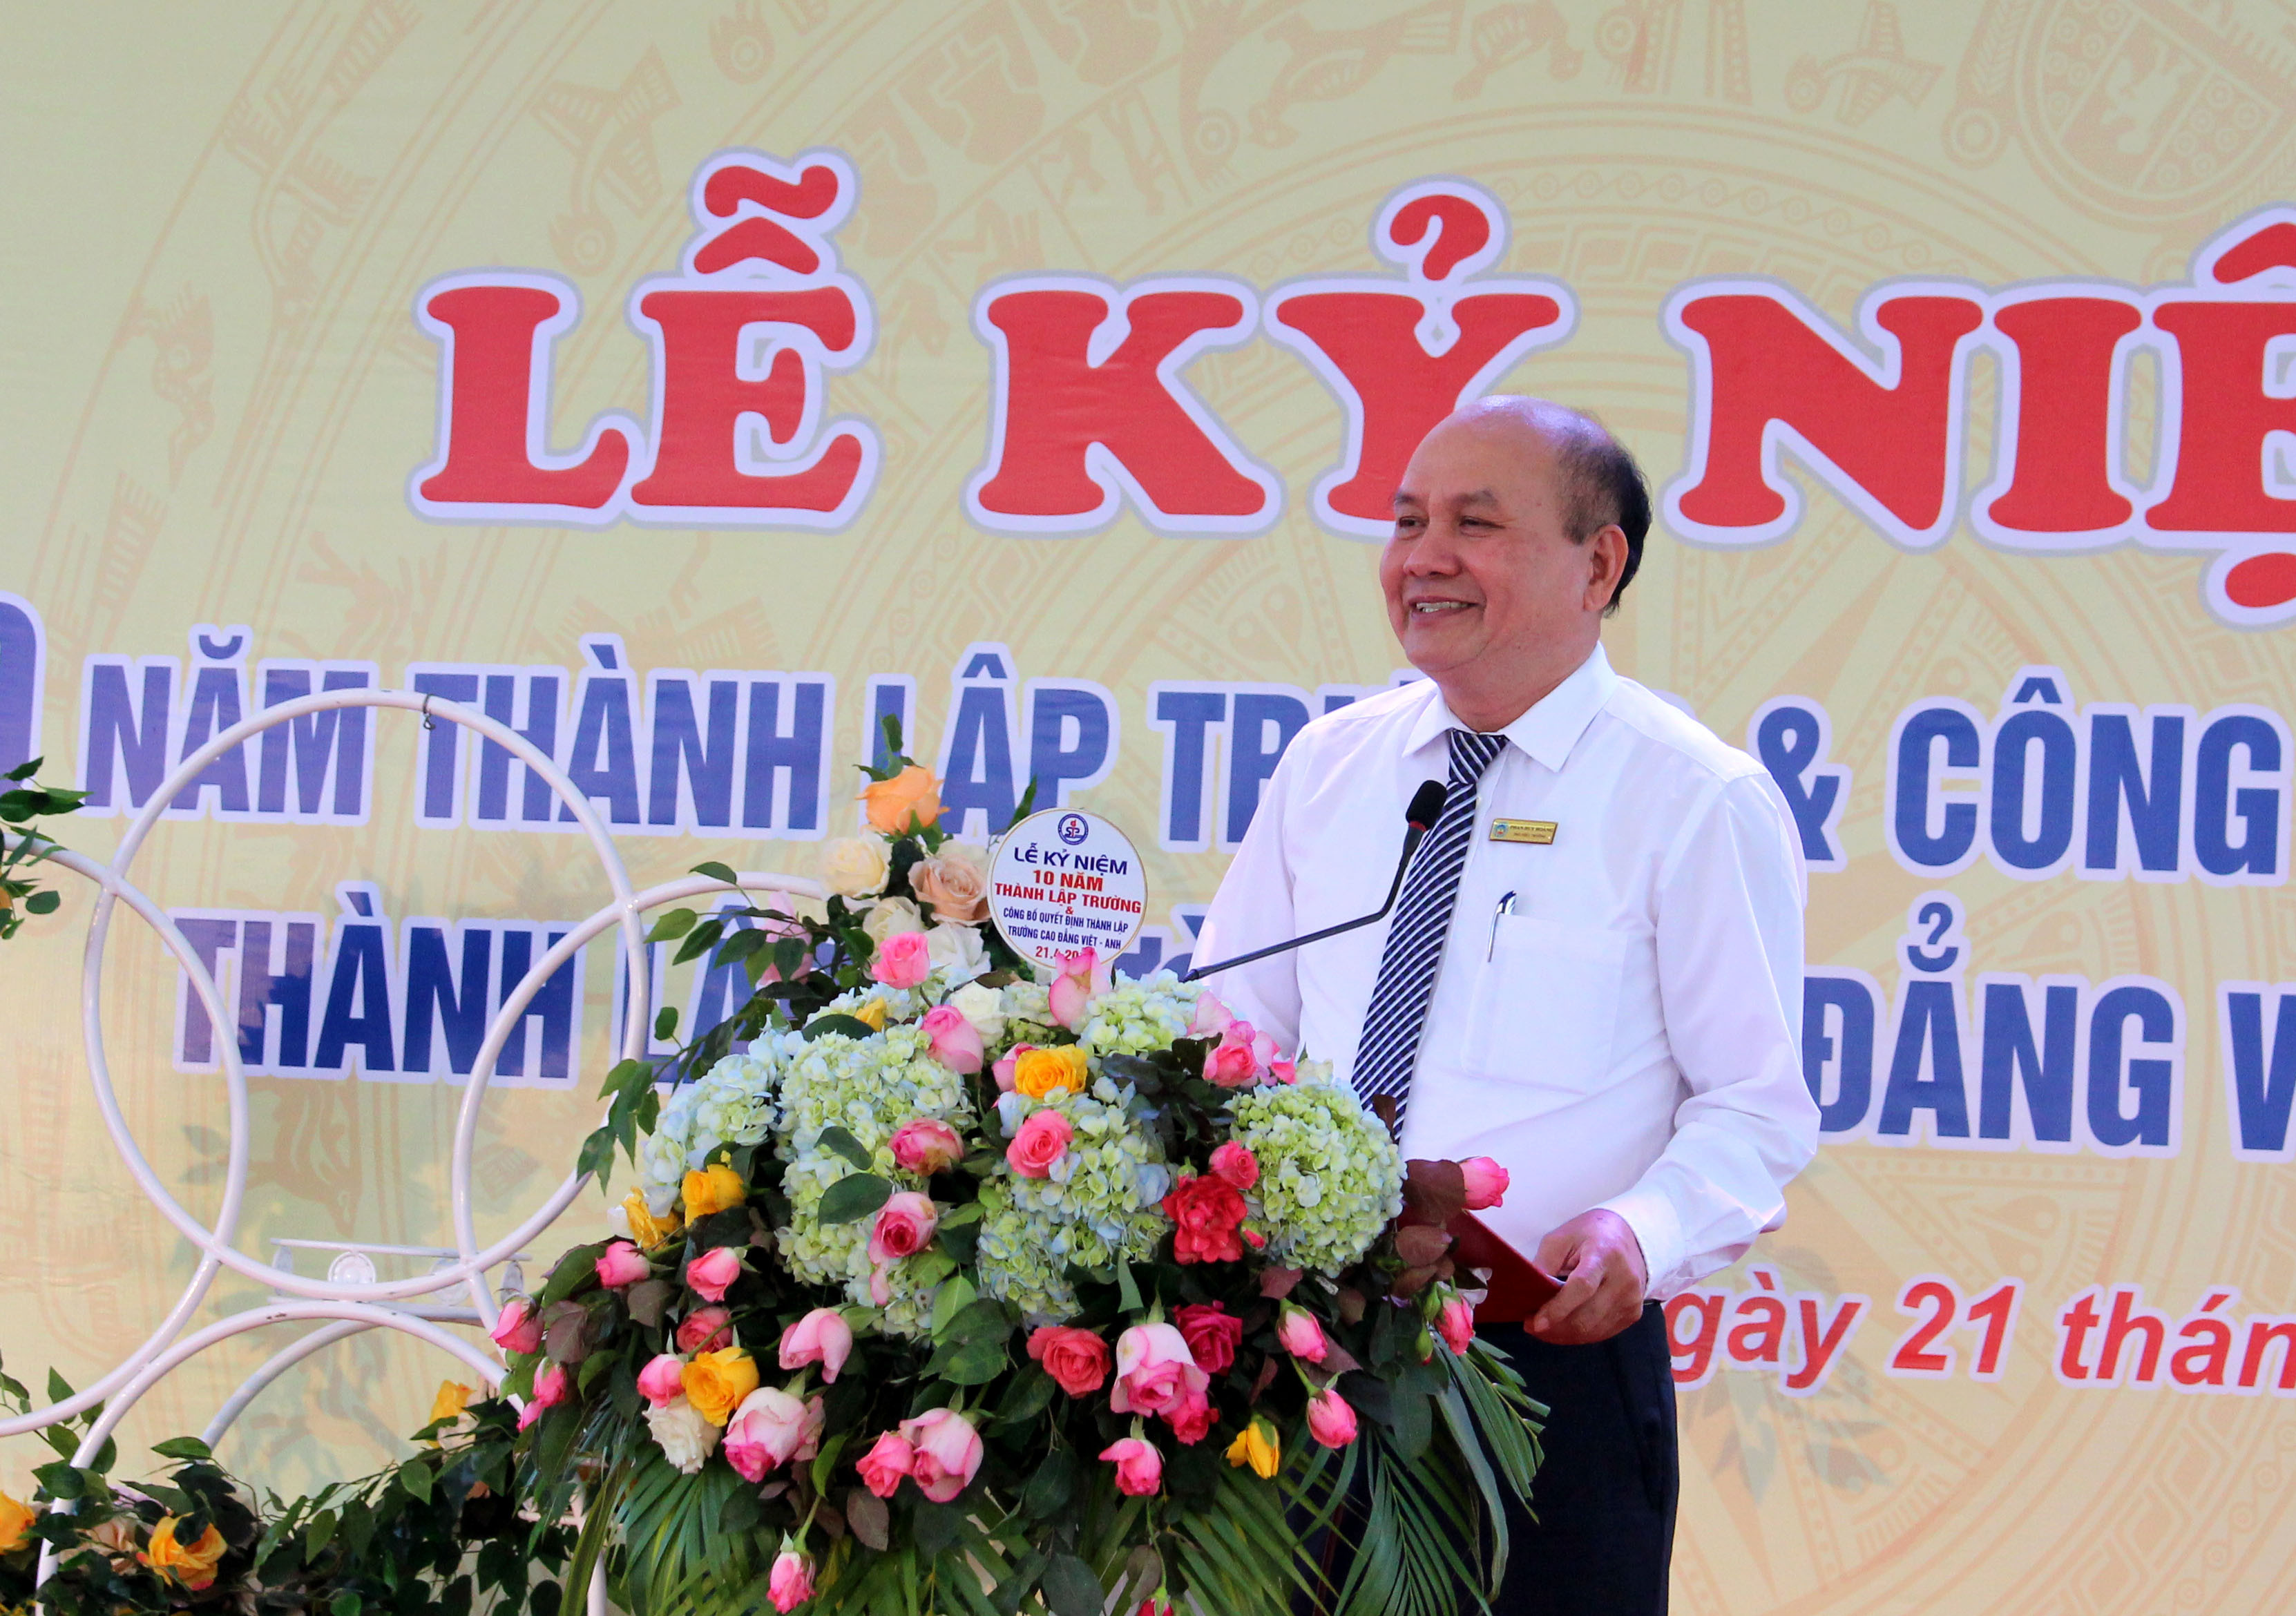 Phát biểu tại buổi lễ, thầy Phan Huy Hoàng - Hiệu trưởng Trường Cao đẳng Việt Anh ôn lại chẳng đường 10 năm xây dựng và phát triển với những tựu quan trọng và định hướng phát triển nhà trường trở thành một trong những điểm sáng của ngành giáo dục của tỉnh nhà.  Ảnh: Đinh  Nguyệt